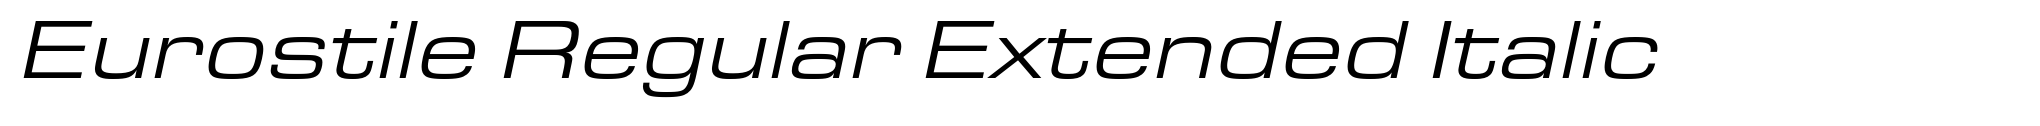 Eurostile Regular Extended Italic image